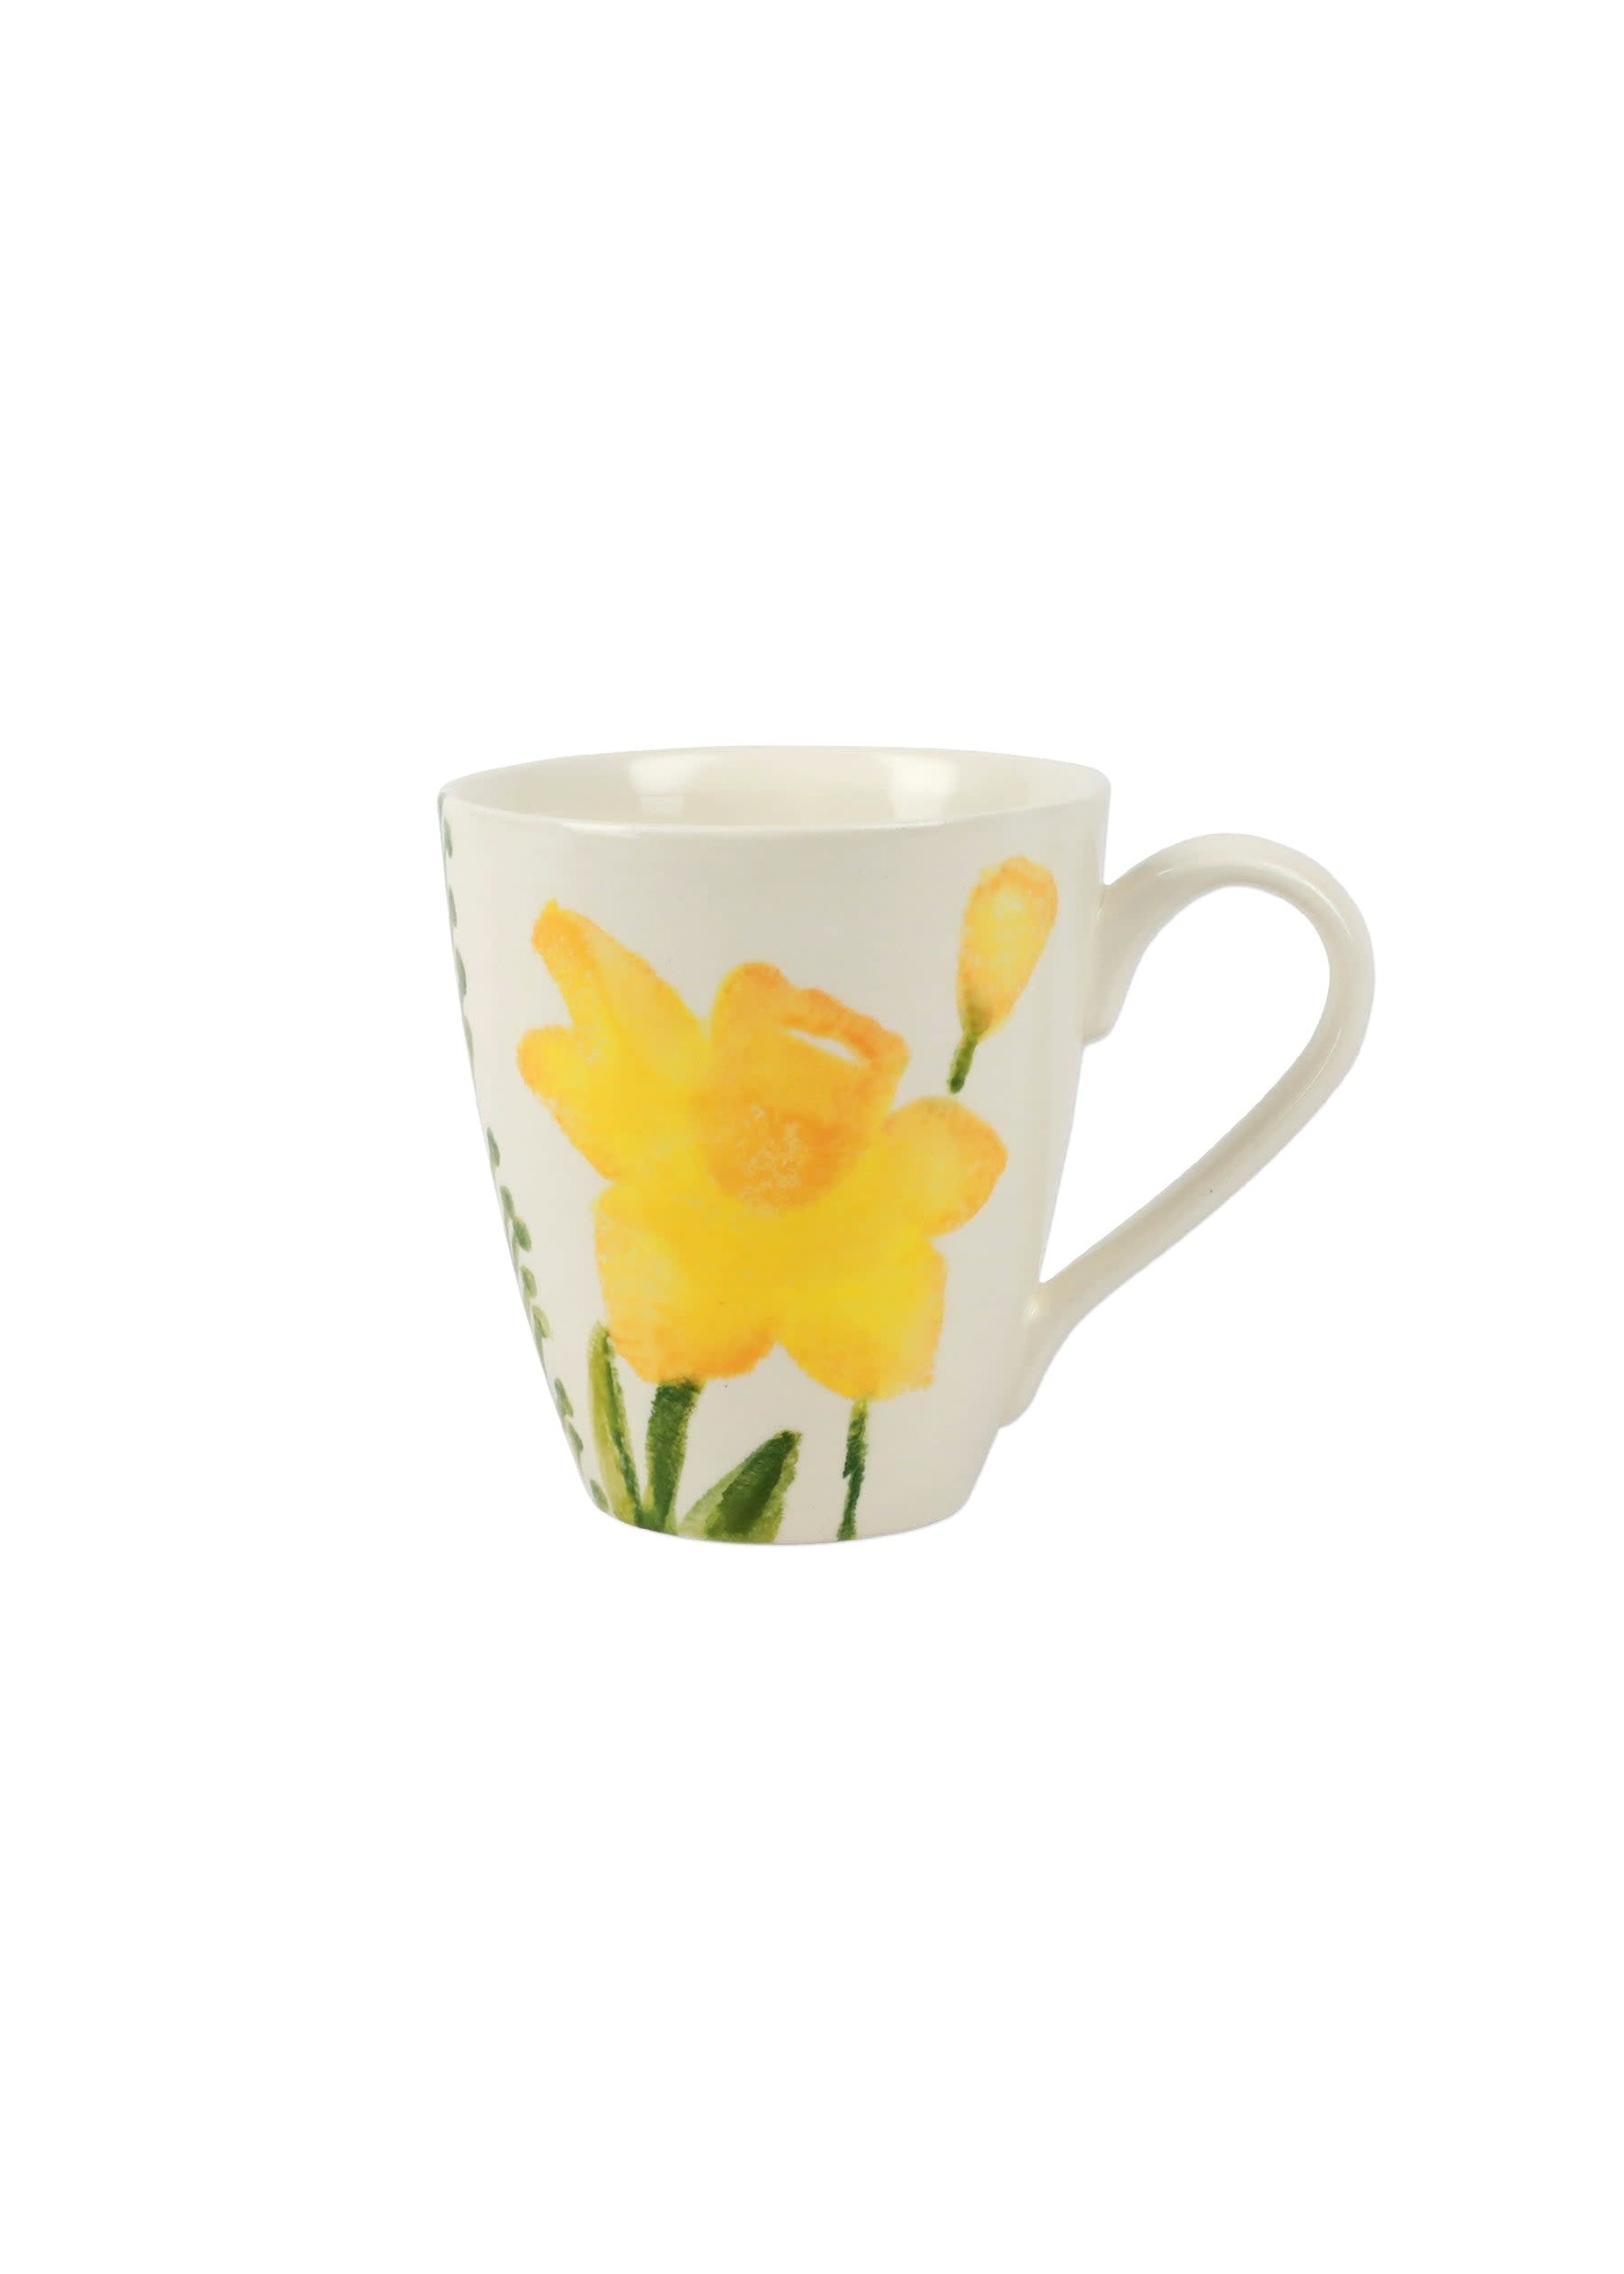 Vietri Fiori di Campo Daffodil Mug